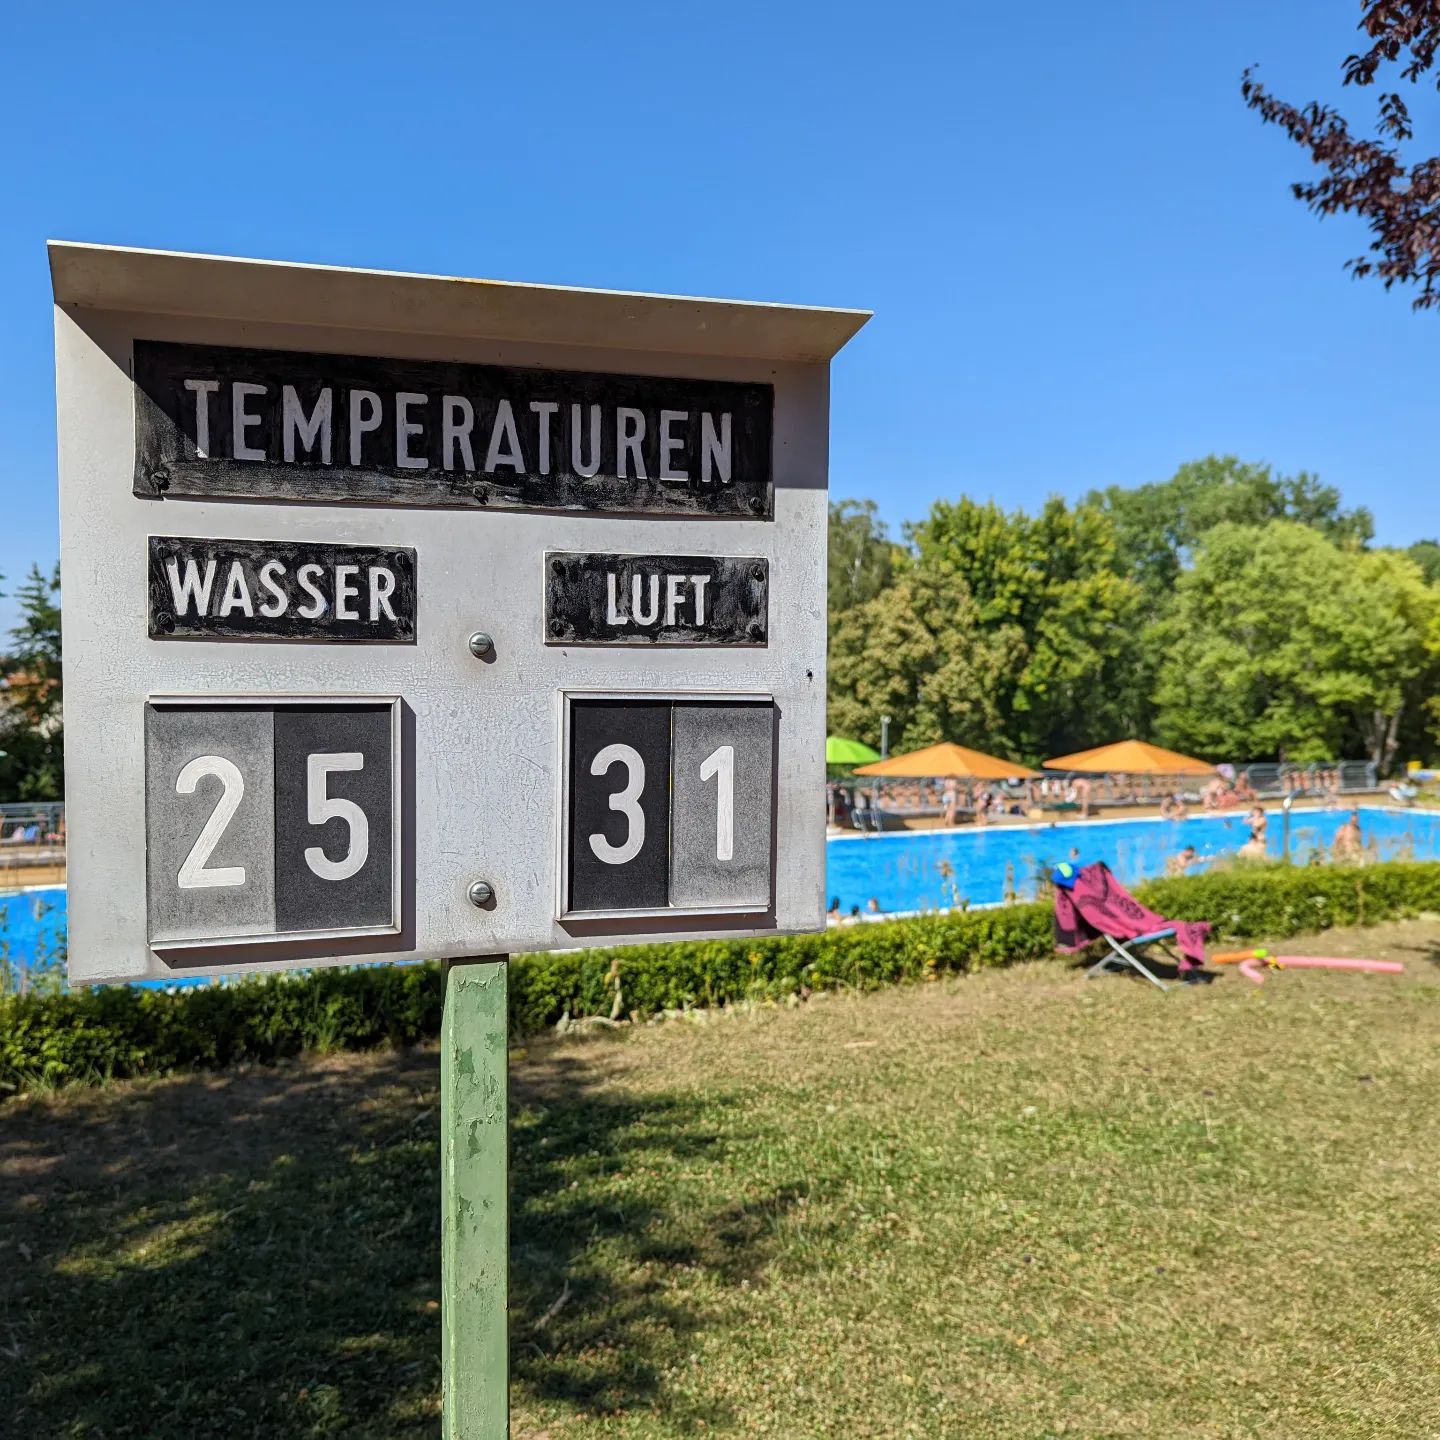 Was will man sonst machen... 🥵 Wie habt ihr diesen ersten Hitzetag verbracht?

#sommer #schwimmbad #schwimmen #baden #hitze #freibad #bamberg